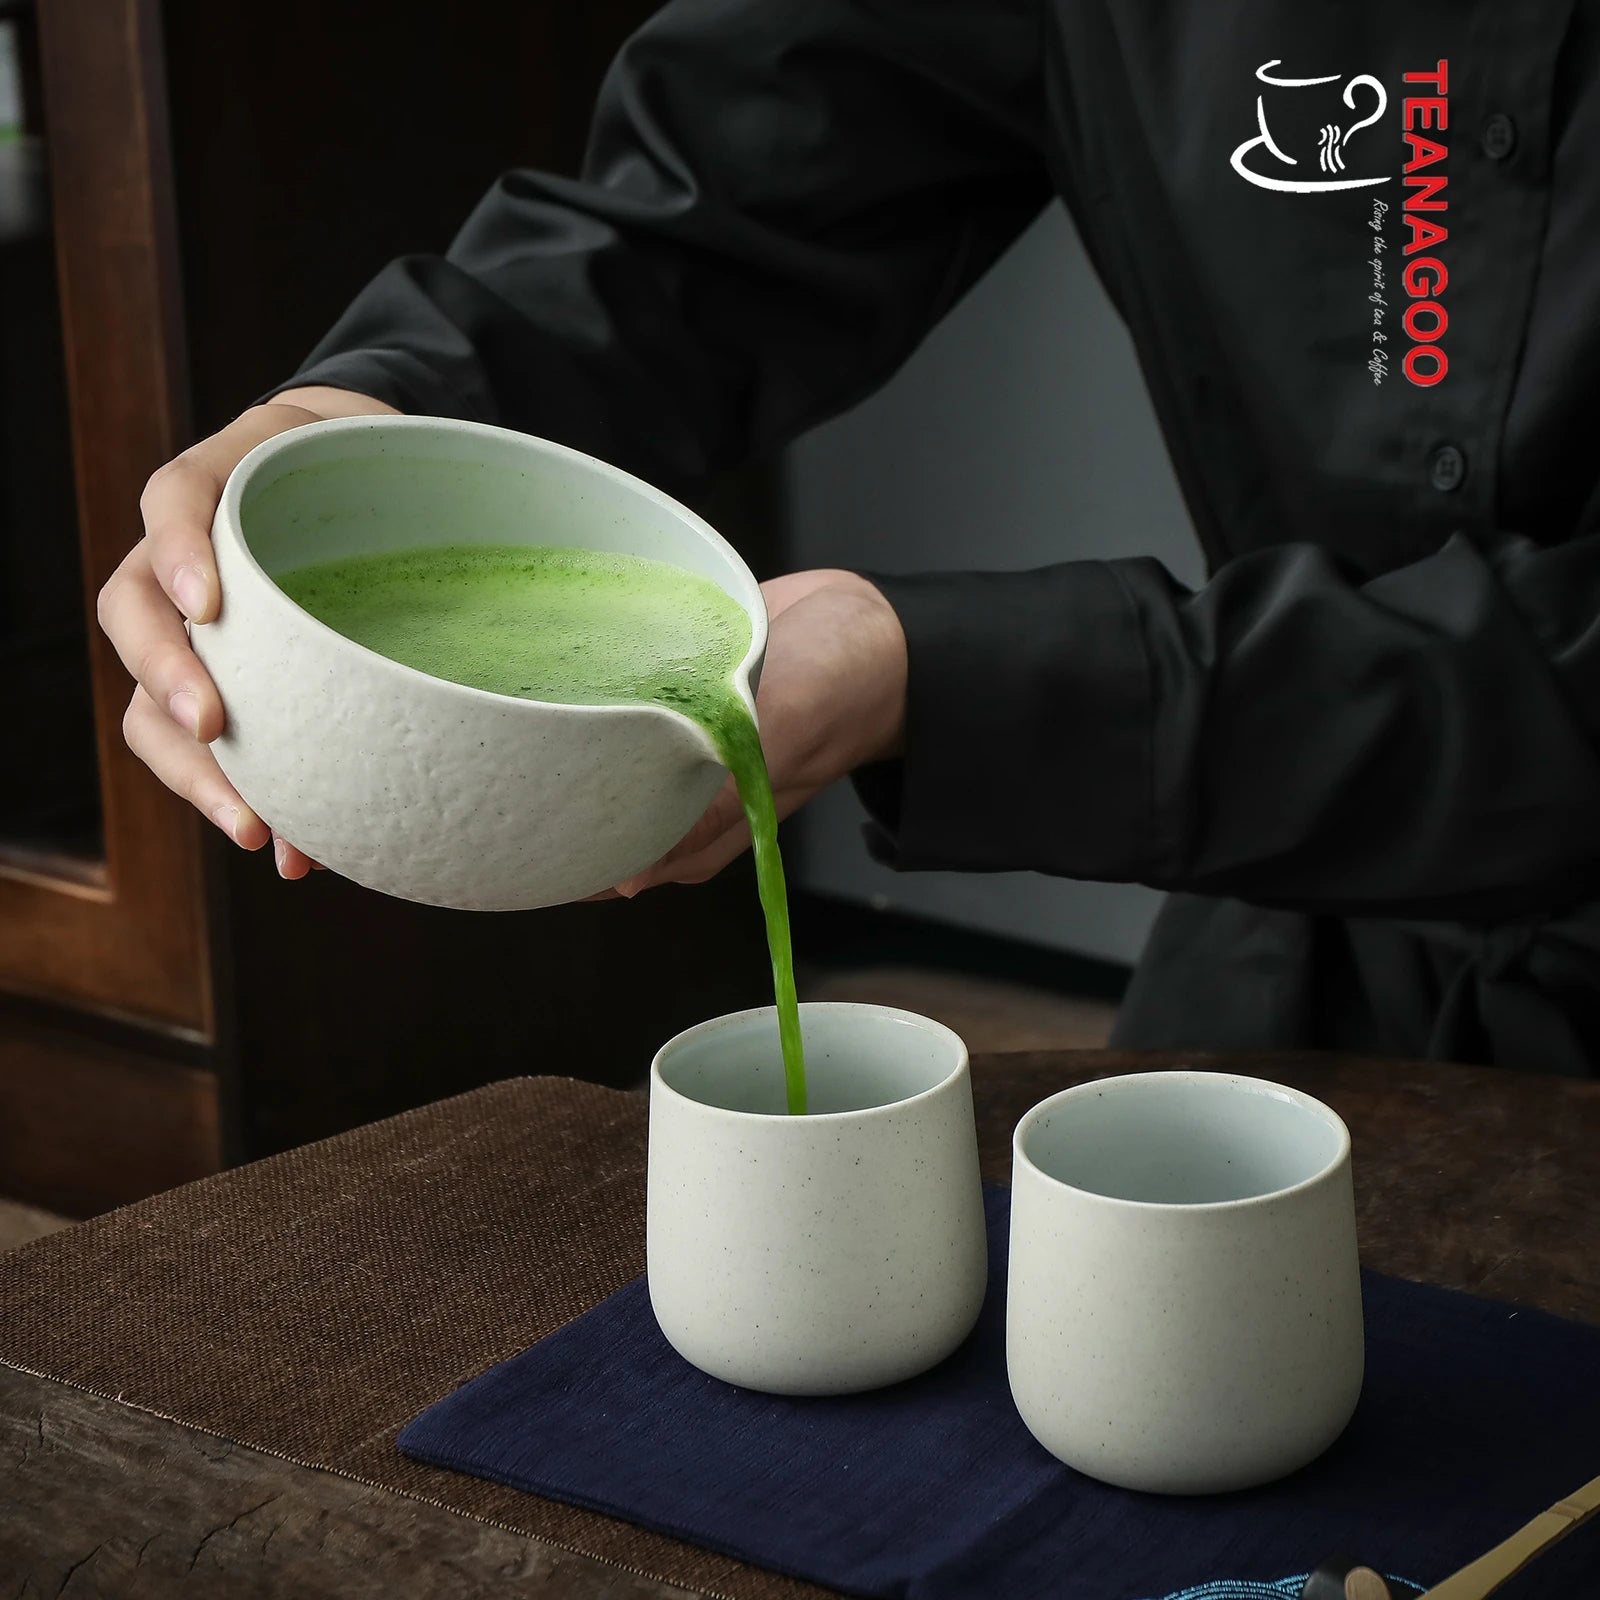 TEANAGOO Juego de té Matcha, Juego de té japonés, Tazón Matcha